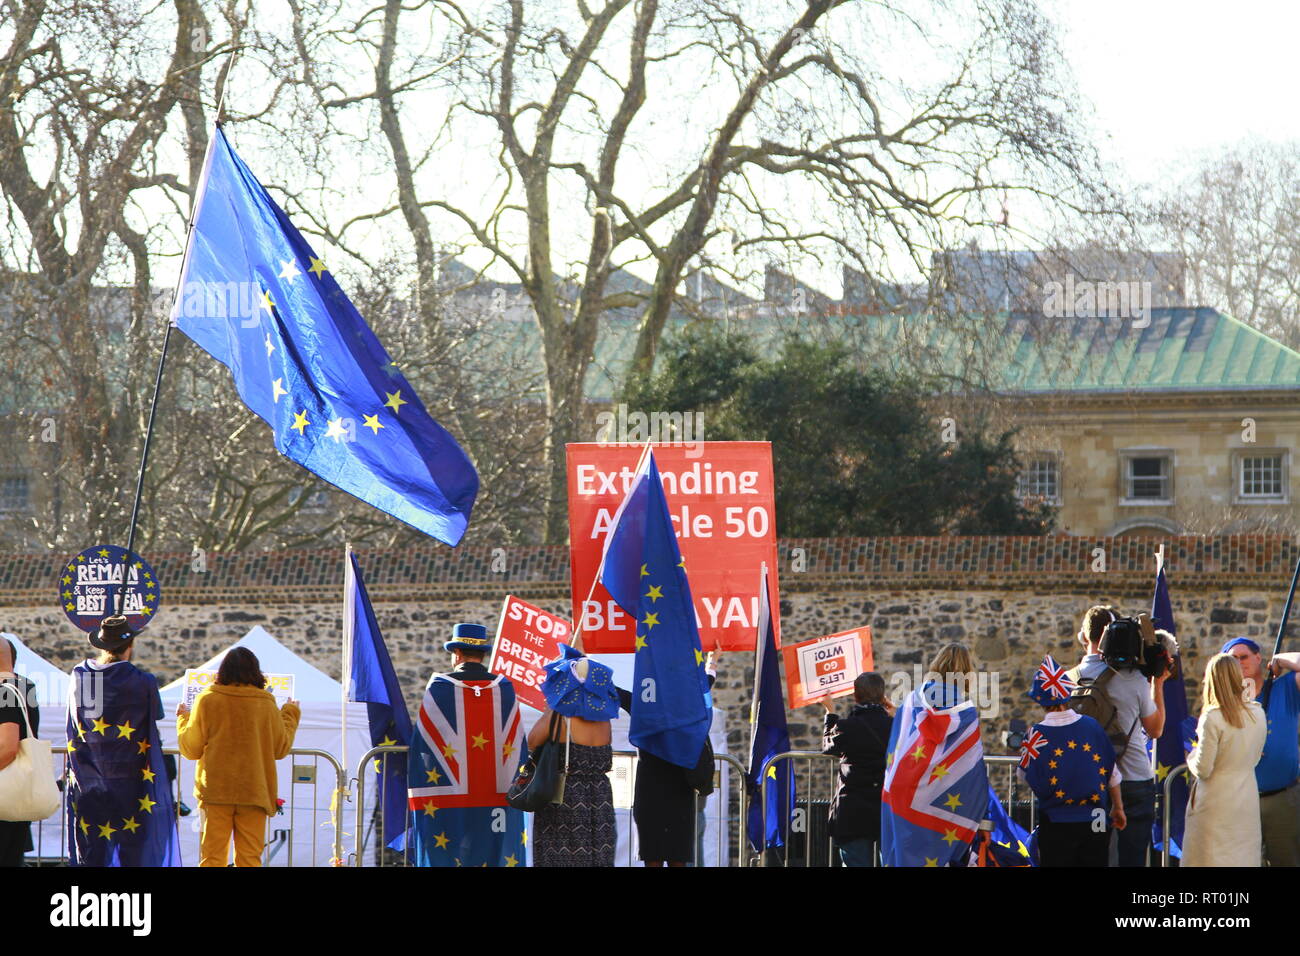 BUNTING FLAGS AFFICHER SUR LES RUES à Westminster, London, UK. Le patriotisme. PRO EUROPE. L'expression. La liberté de parole. PARTIOTIC. Rester dans l'Europe. BREXIT ANTI. BREXIT STOP DE PROTESTATION. REMAINERS. Ue PRO. Banque D'Images